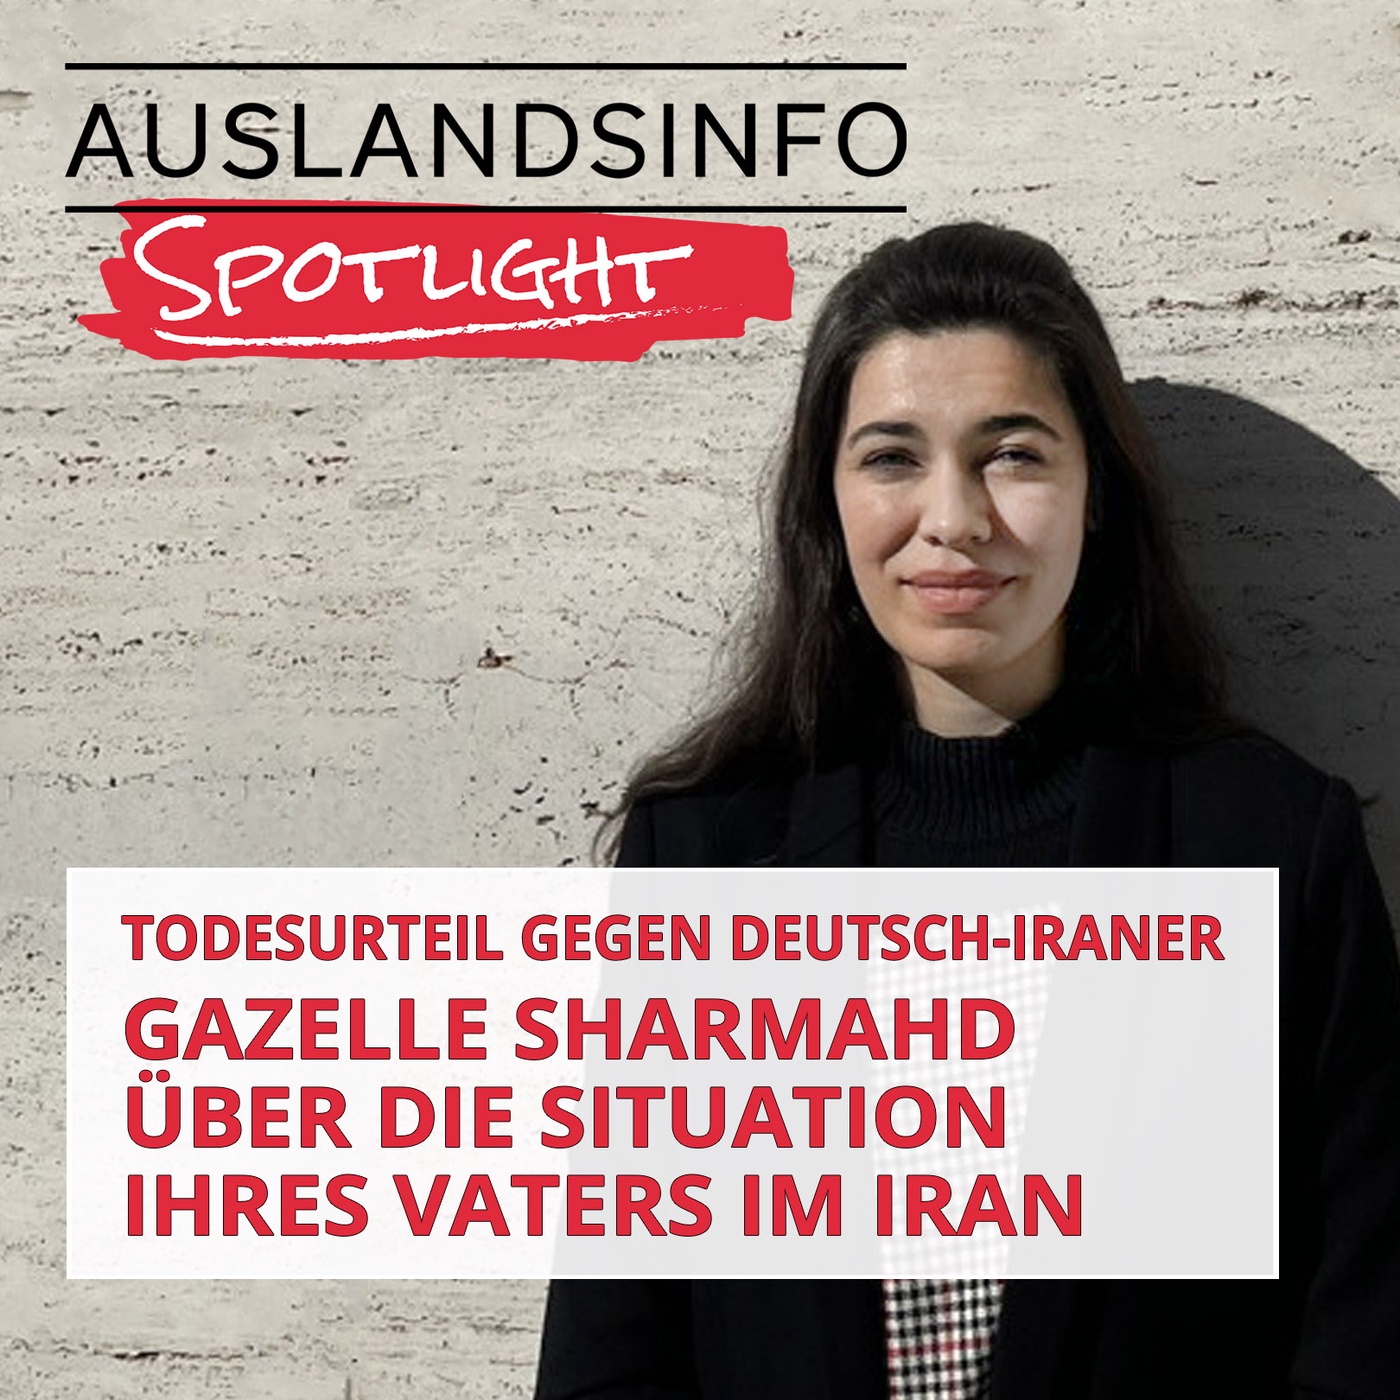 Todesurteil gegen Deutsch-Iraner: Gazelle Sharmahd über die Situation ihres Vaters im Iran